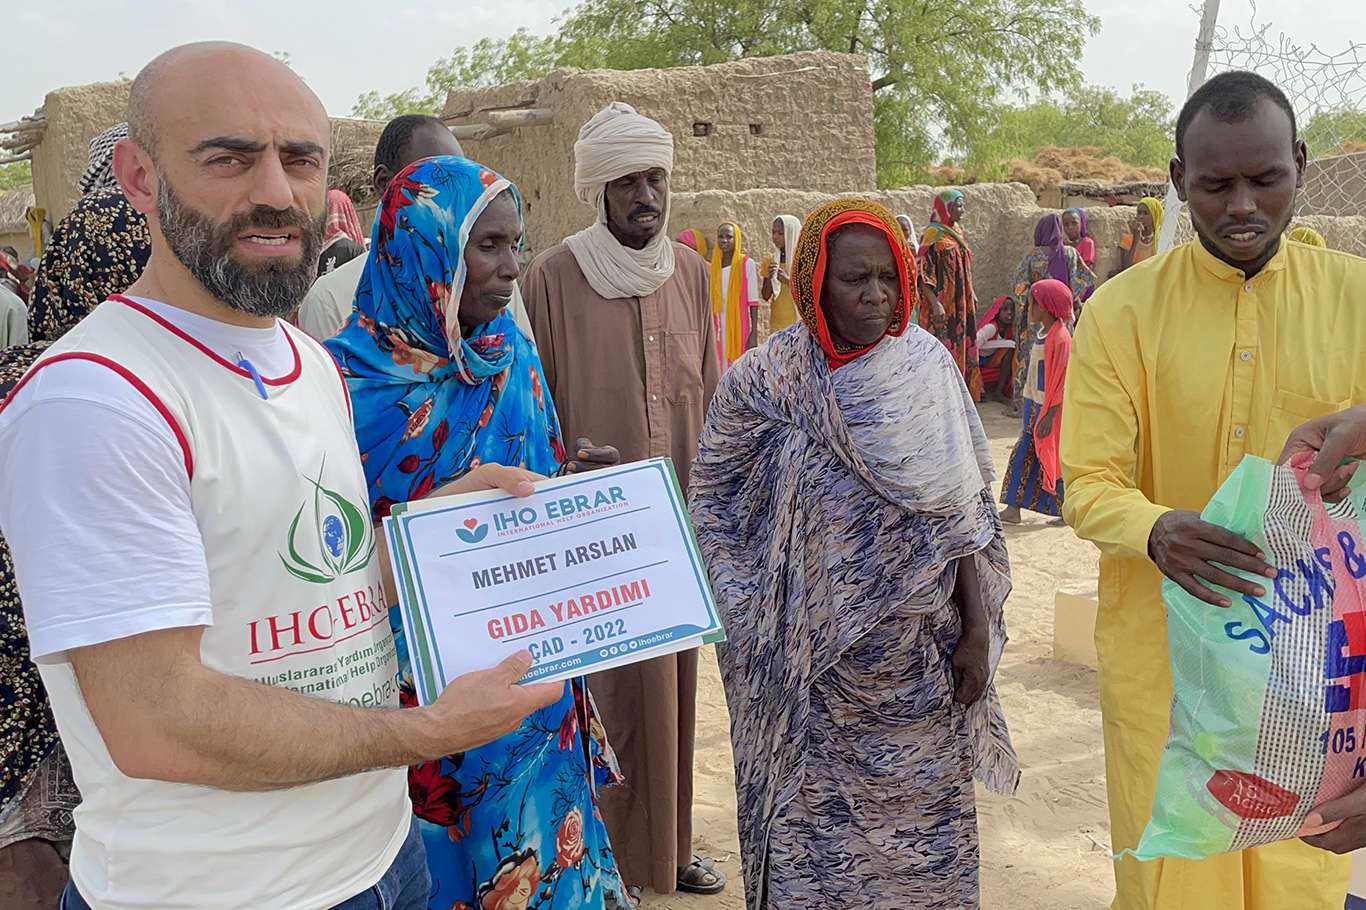 IHO EBRAR Çad'da binlerce kişiye yardım ulaştırdı